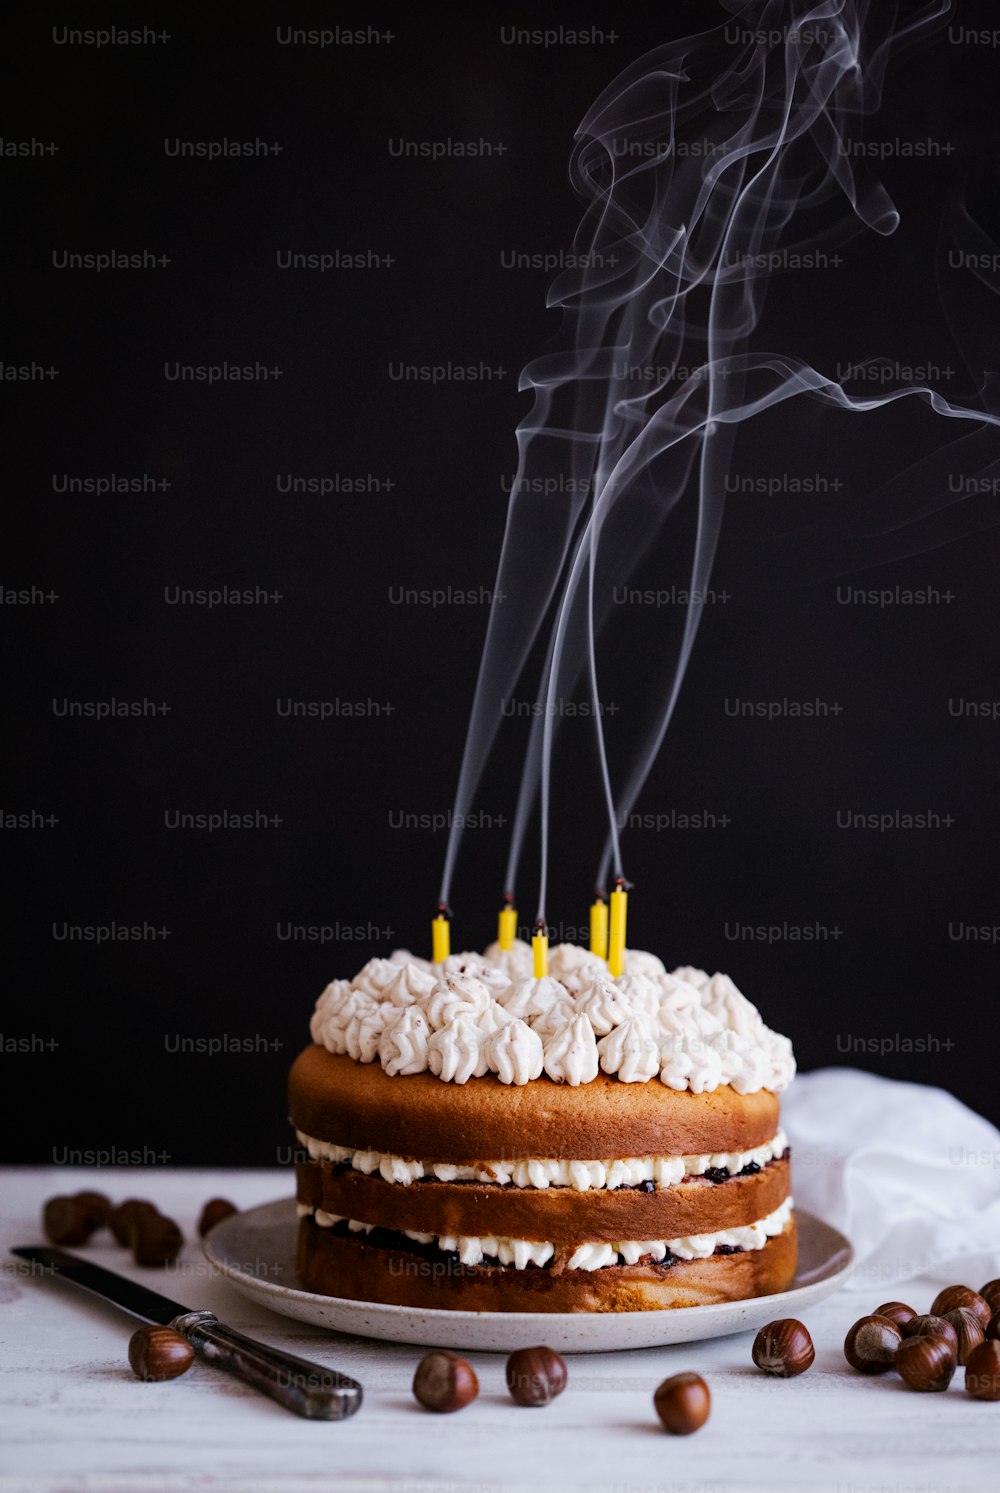 Un pastel de cumpleaños con humo saliendo de él